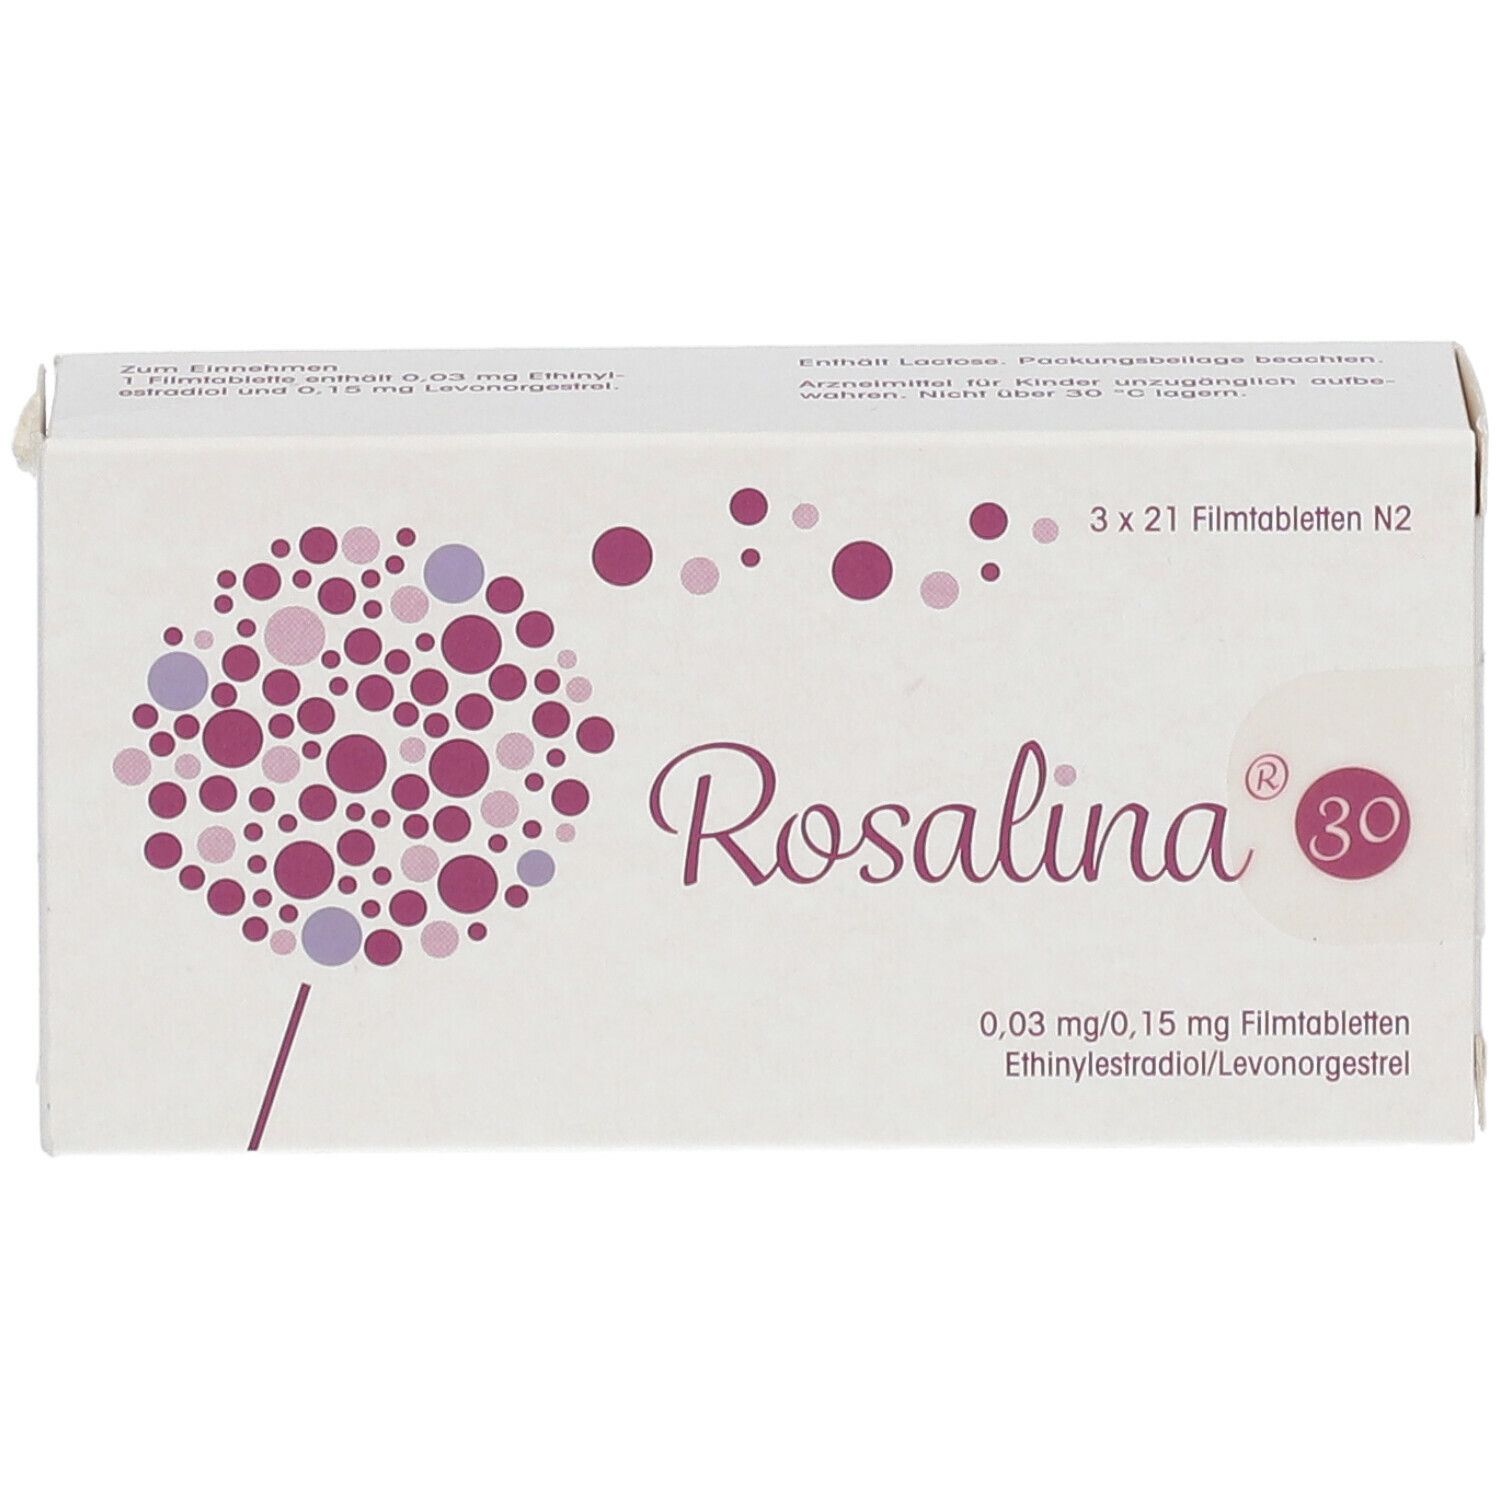 Rosalina® 30 0,03 mg/0,15 mg